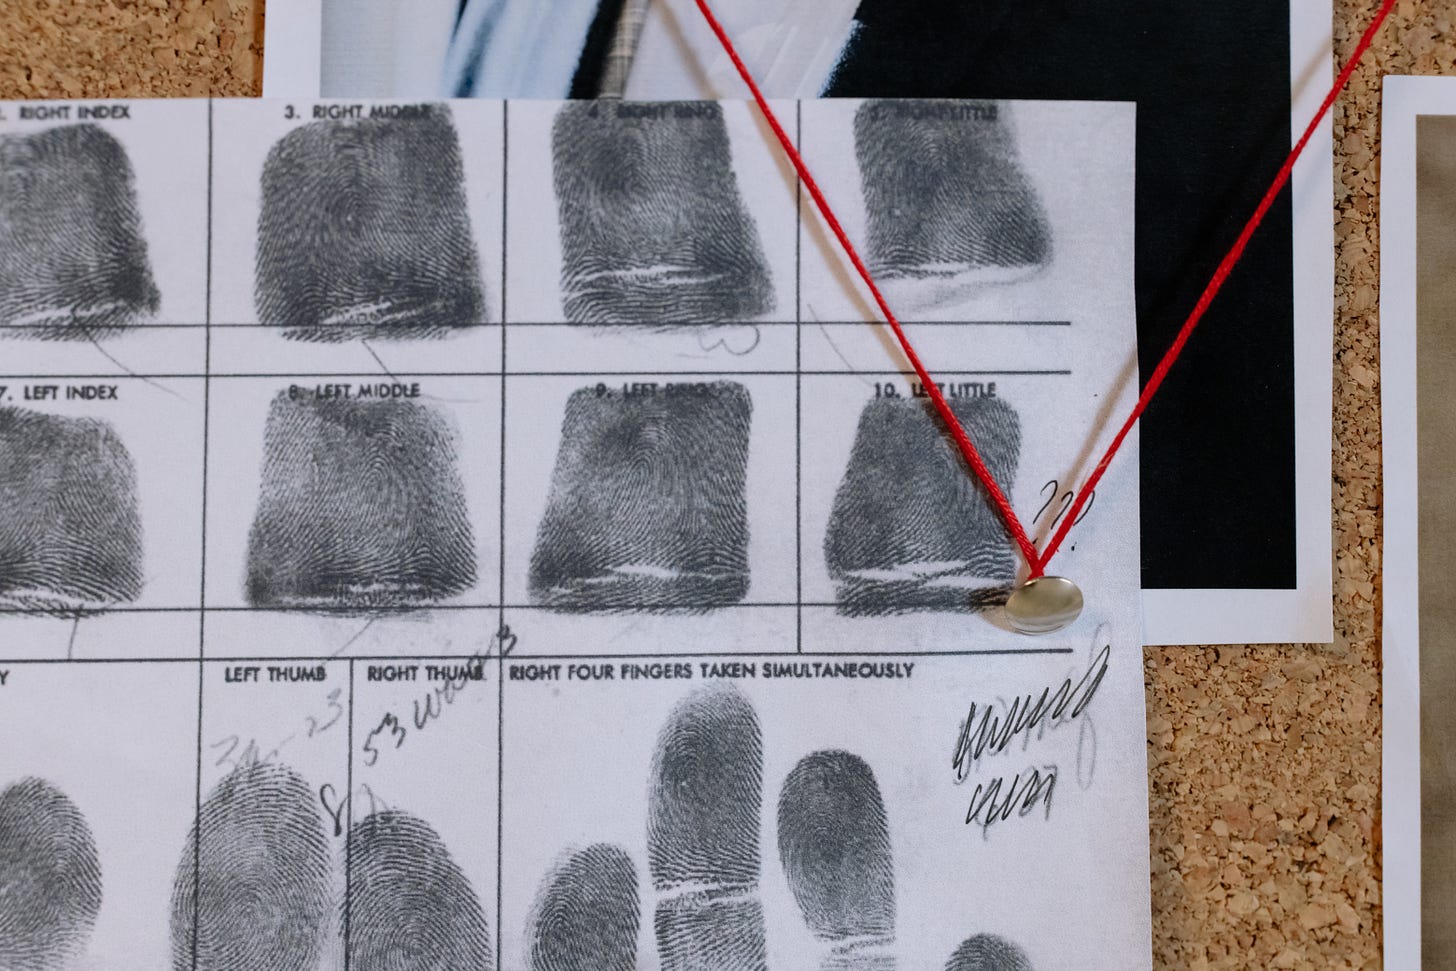 Crime board showing fingerprints and various links